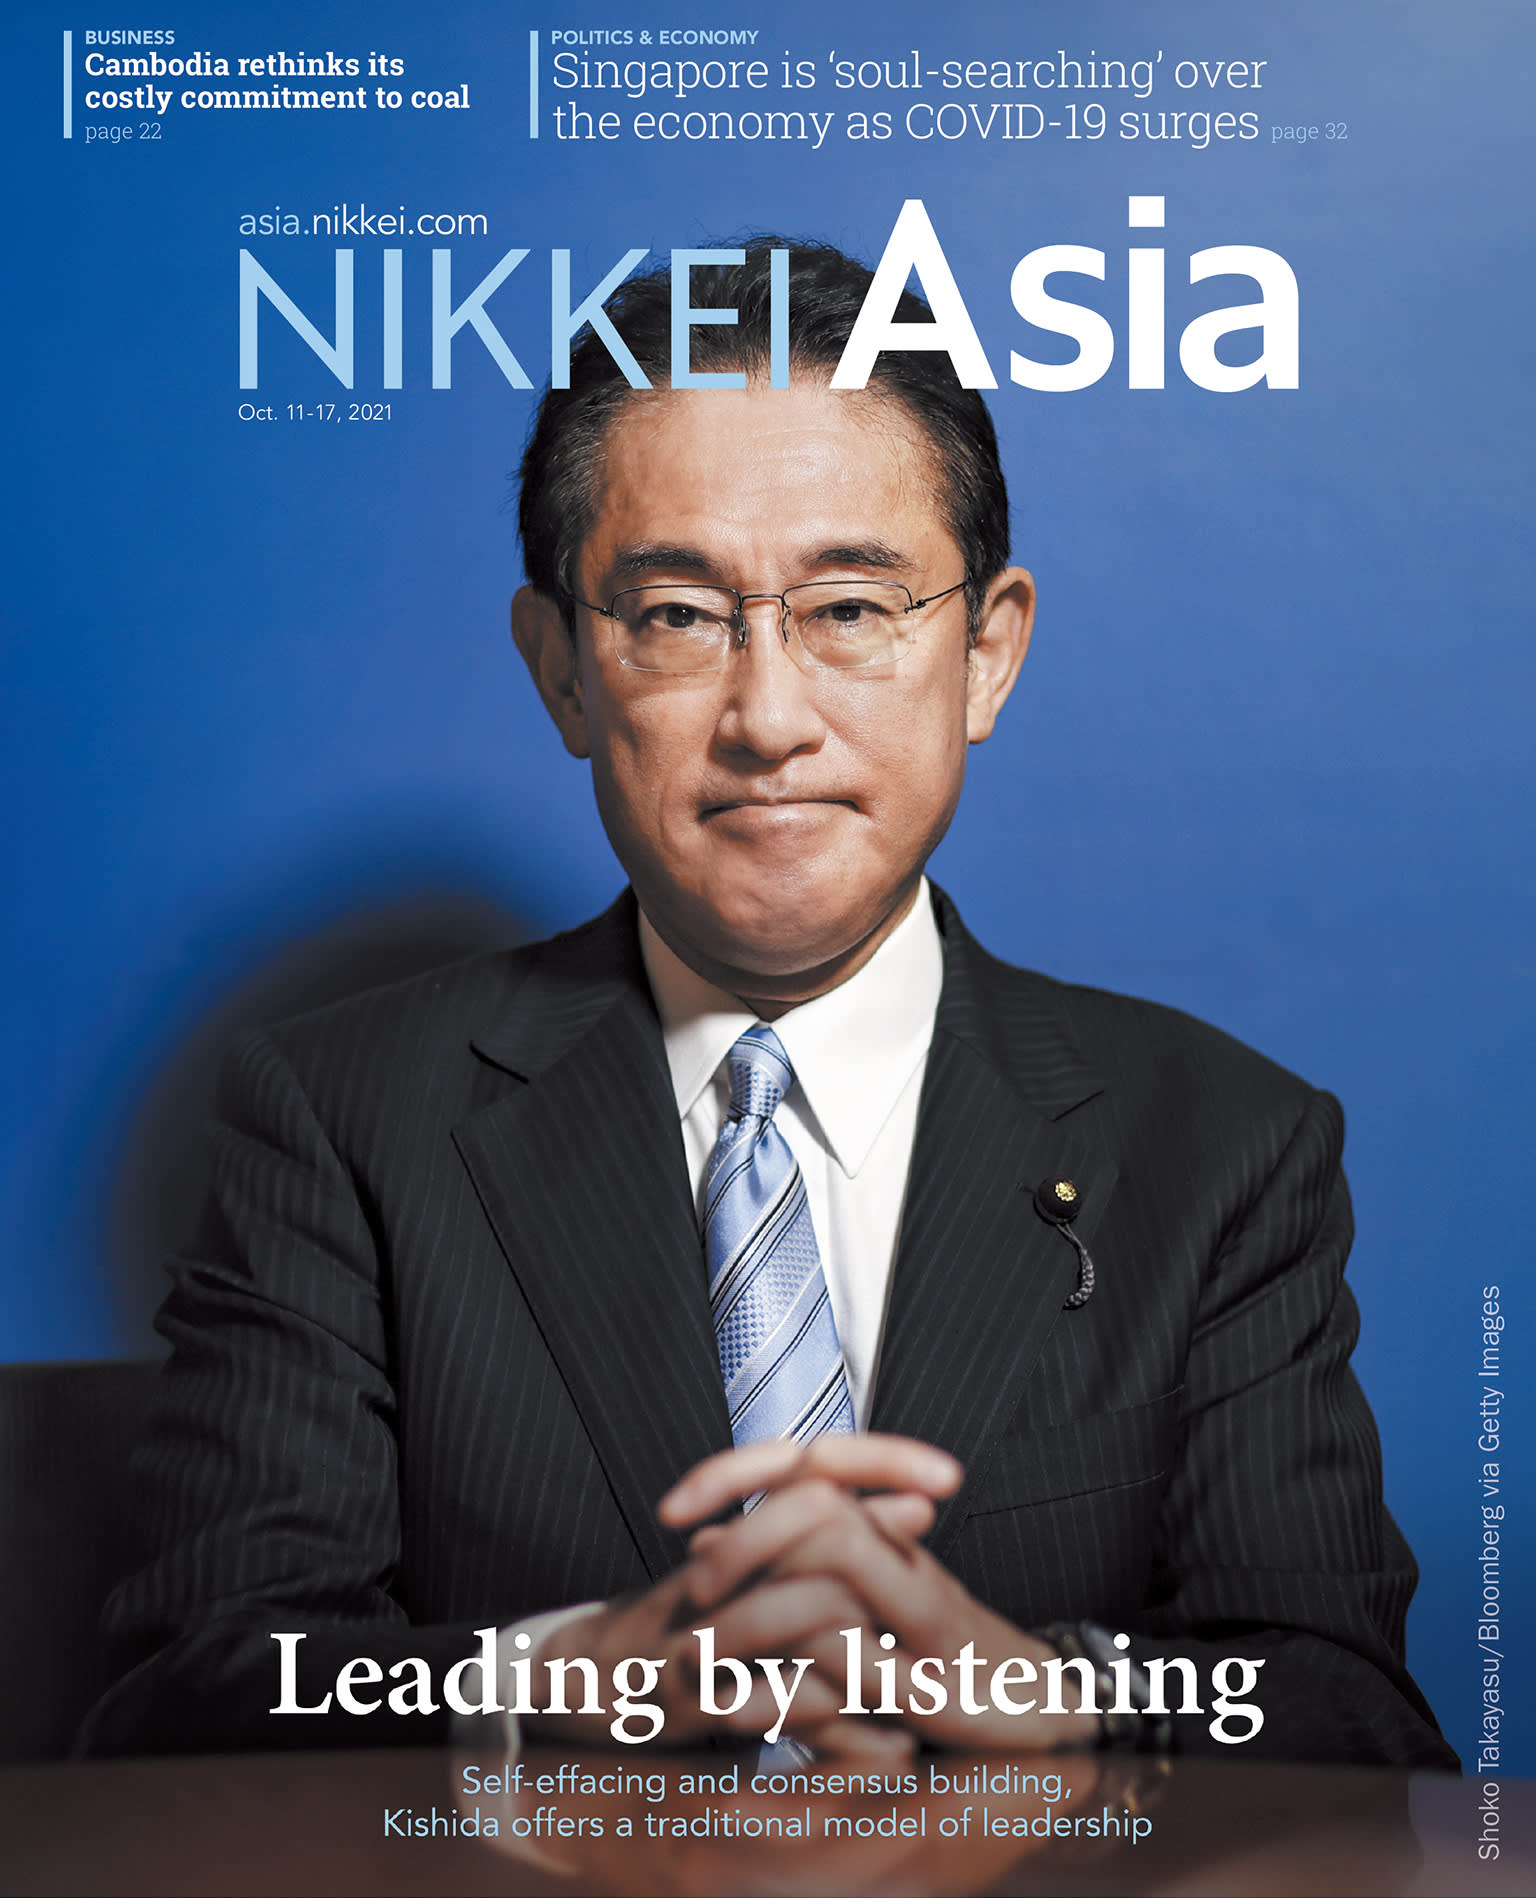 Nikkei Asian Review: Nikkei Asia - 2021: LEADING BY LISTENING - 42.21 tạp chí kinh tế nước ngoài, nhập khẩu từ Singapore